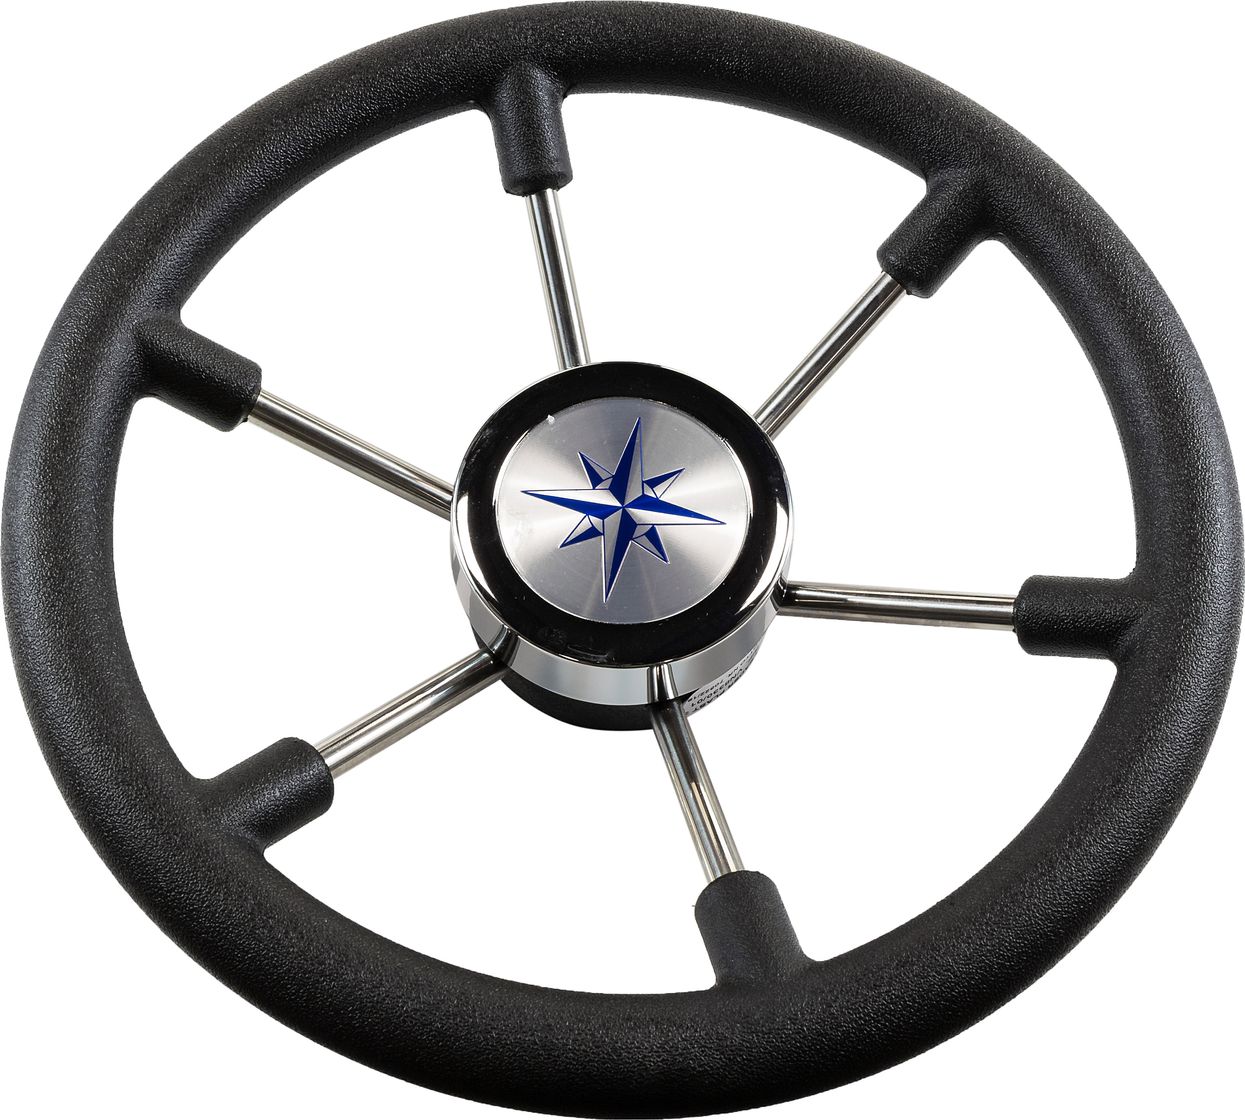 Рулевое колесо LEADER PLAST черный обод серебряные спицы д. 330 мм VN8330-01 рулевое колесо orion обод чернокрасный спицы серебряные д 355 мм vn960101 95